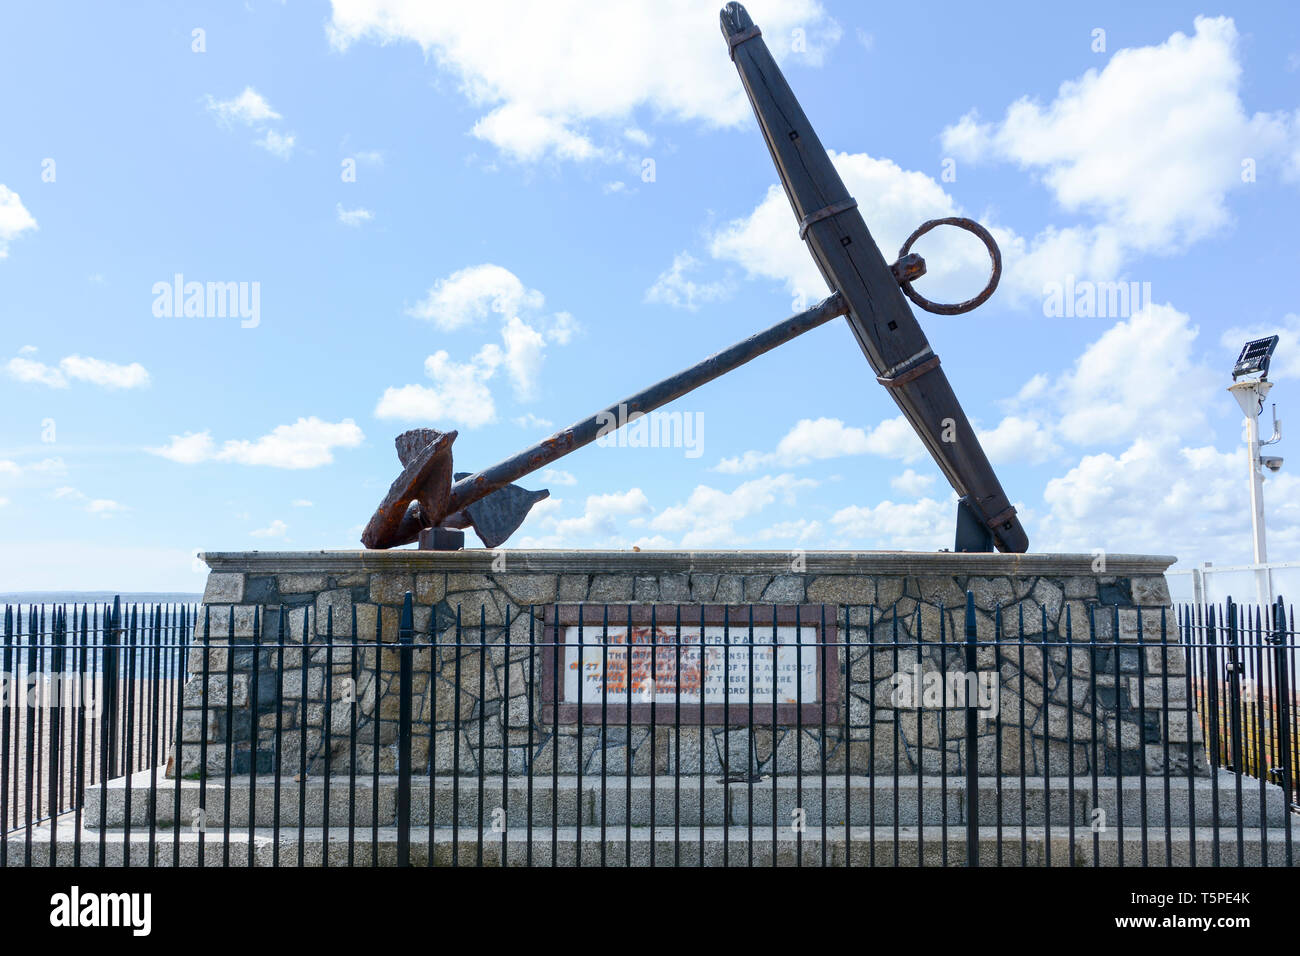 England erwartet, dass jedermann seine Pflicht - der HMS Victory Anker Denkmal für die Schlacht von Trafalgar, Portsmouth, Hampshire, England, UK Zu Tun Stockfoto